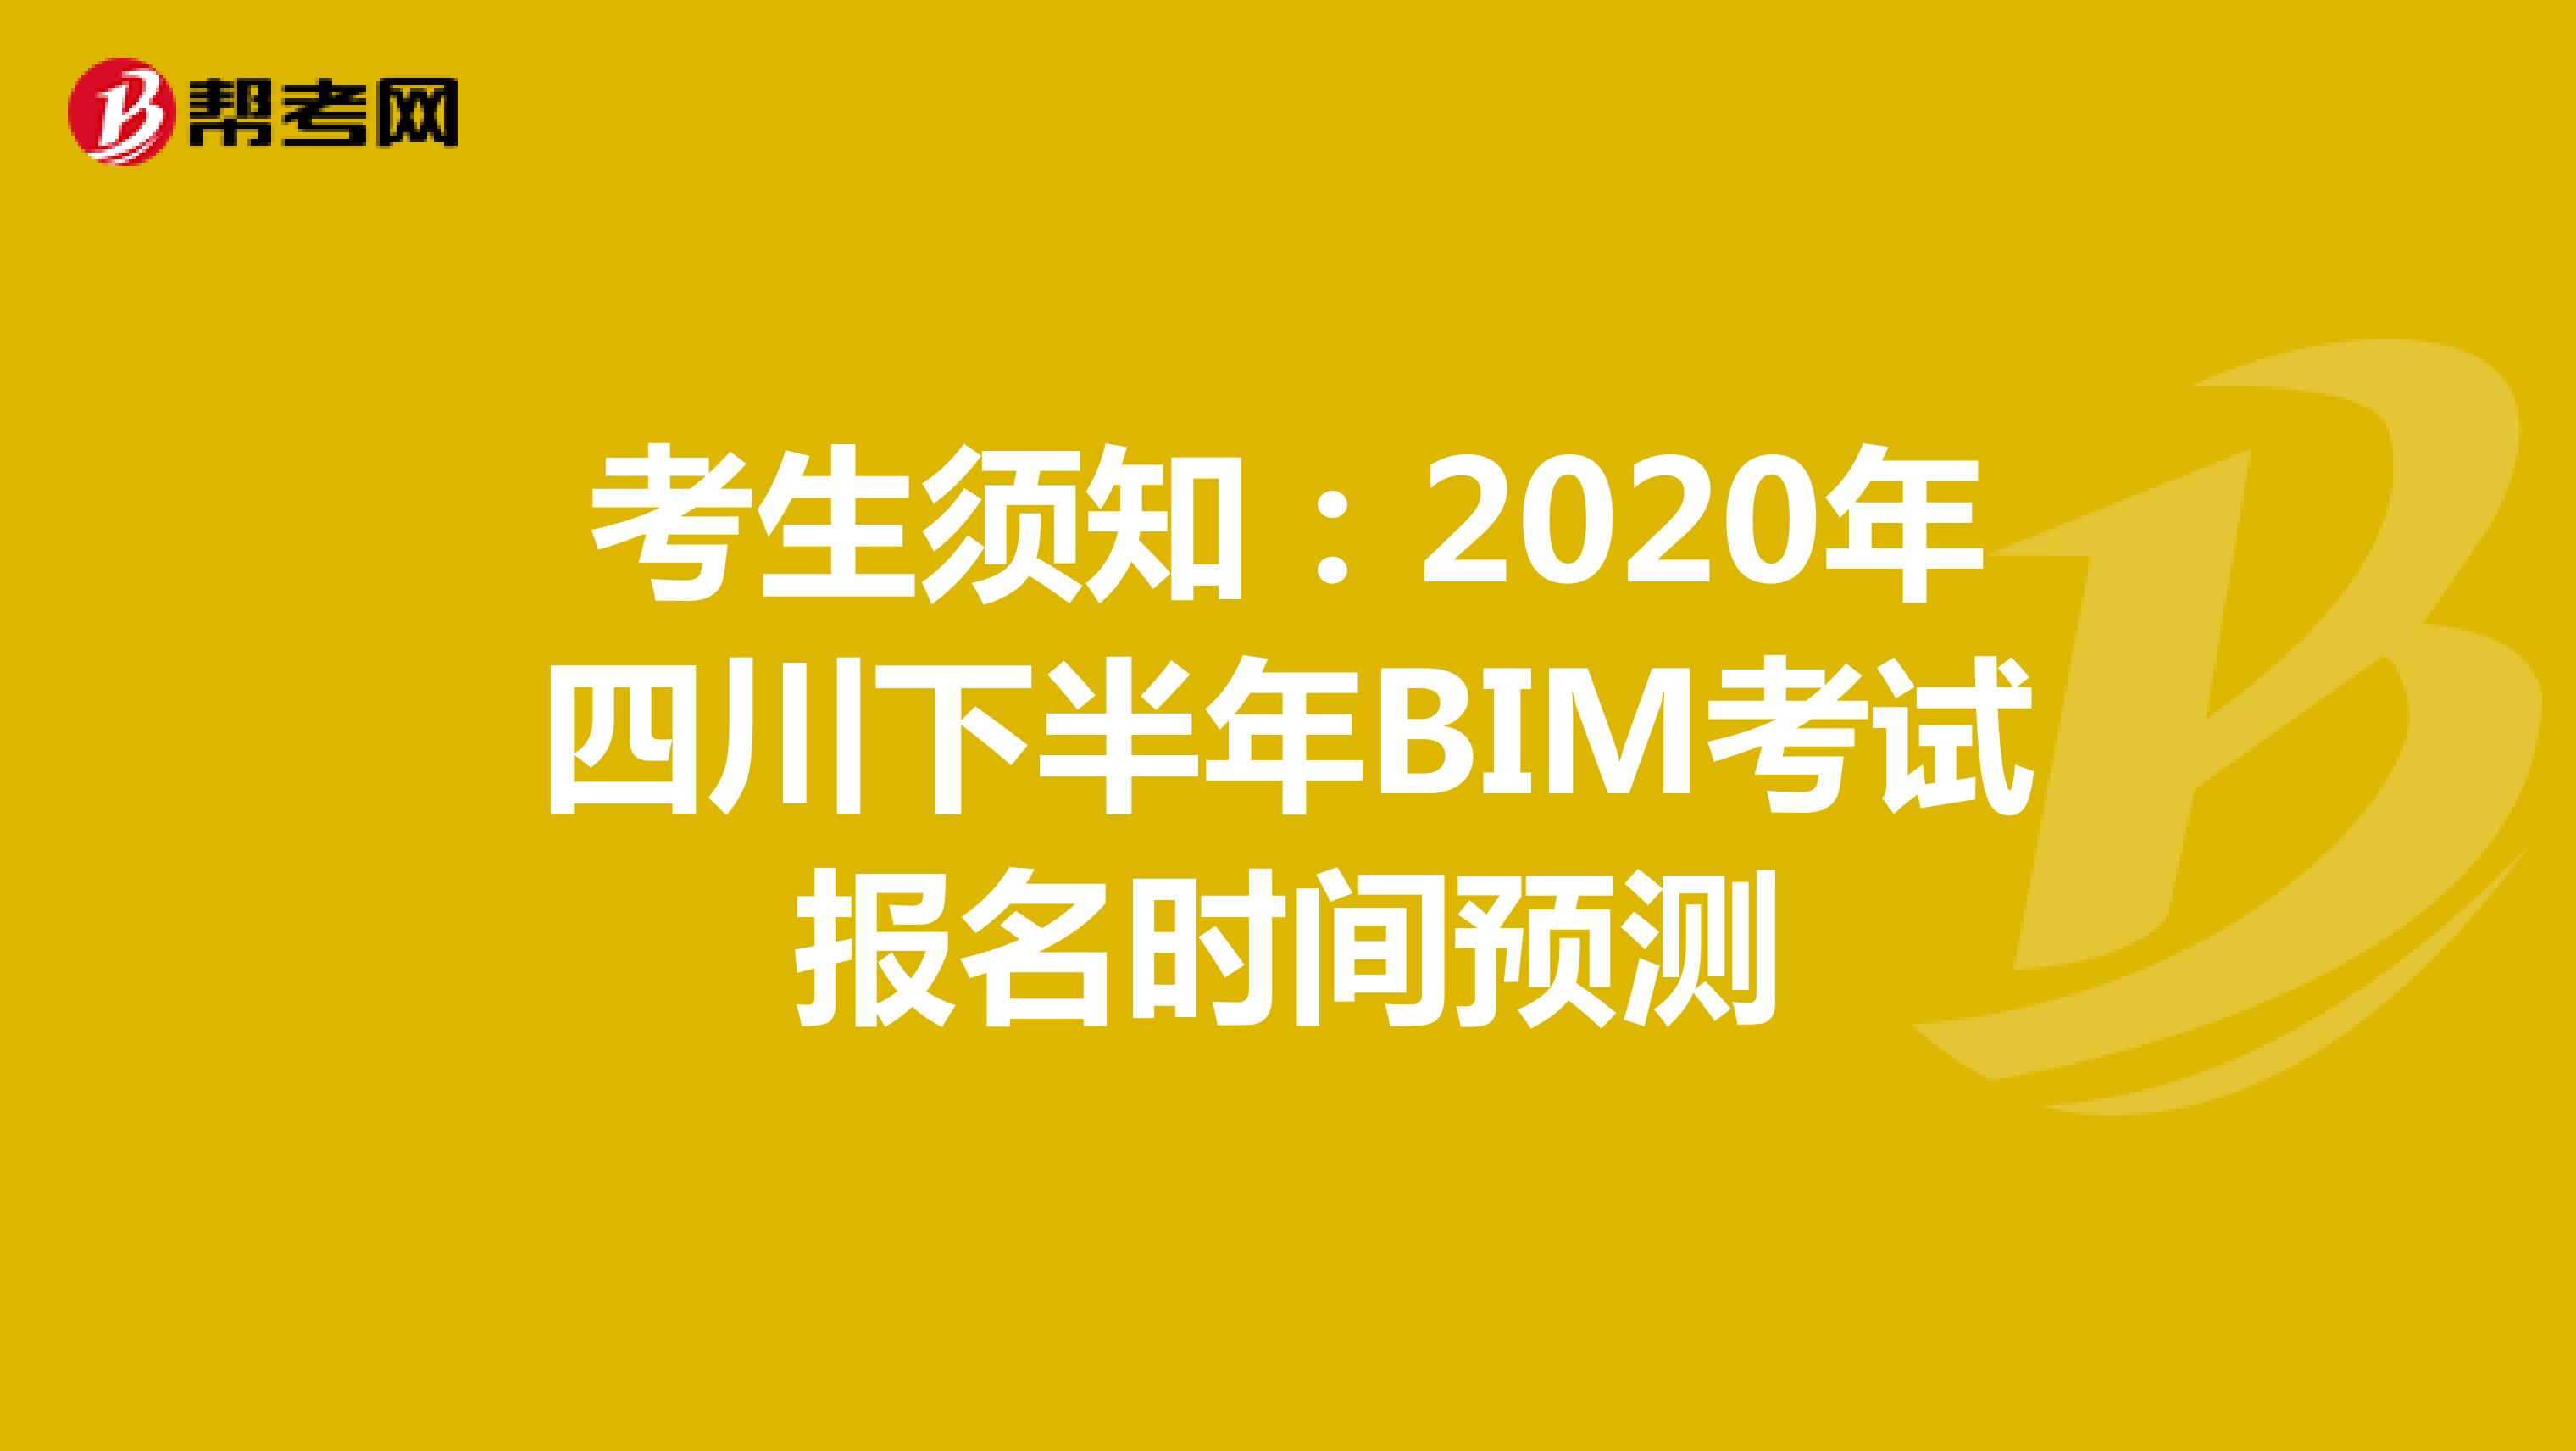 考生须知：2020年四川下半年BIM考试报名时间预测